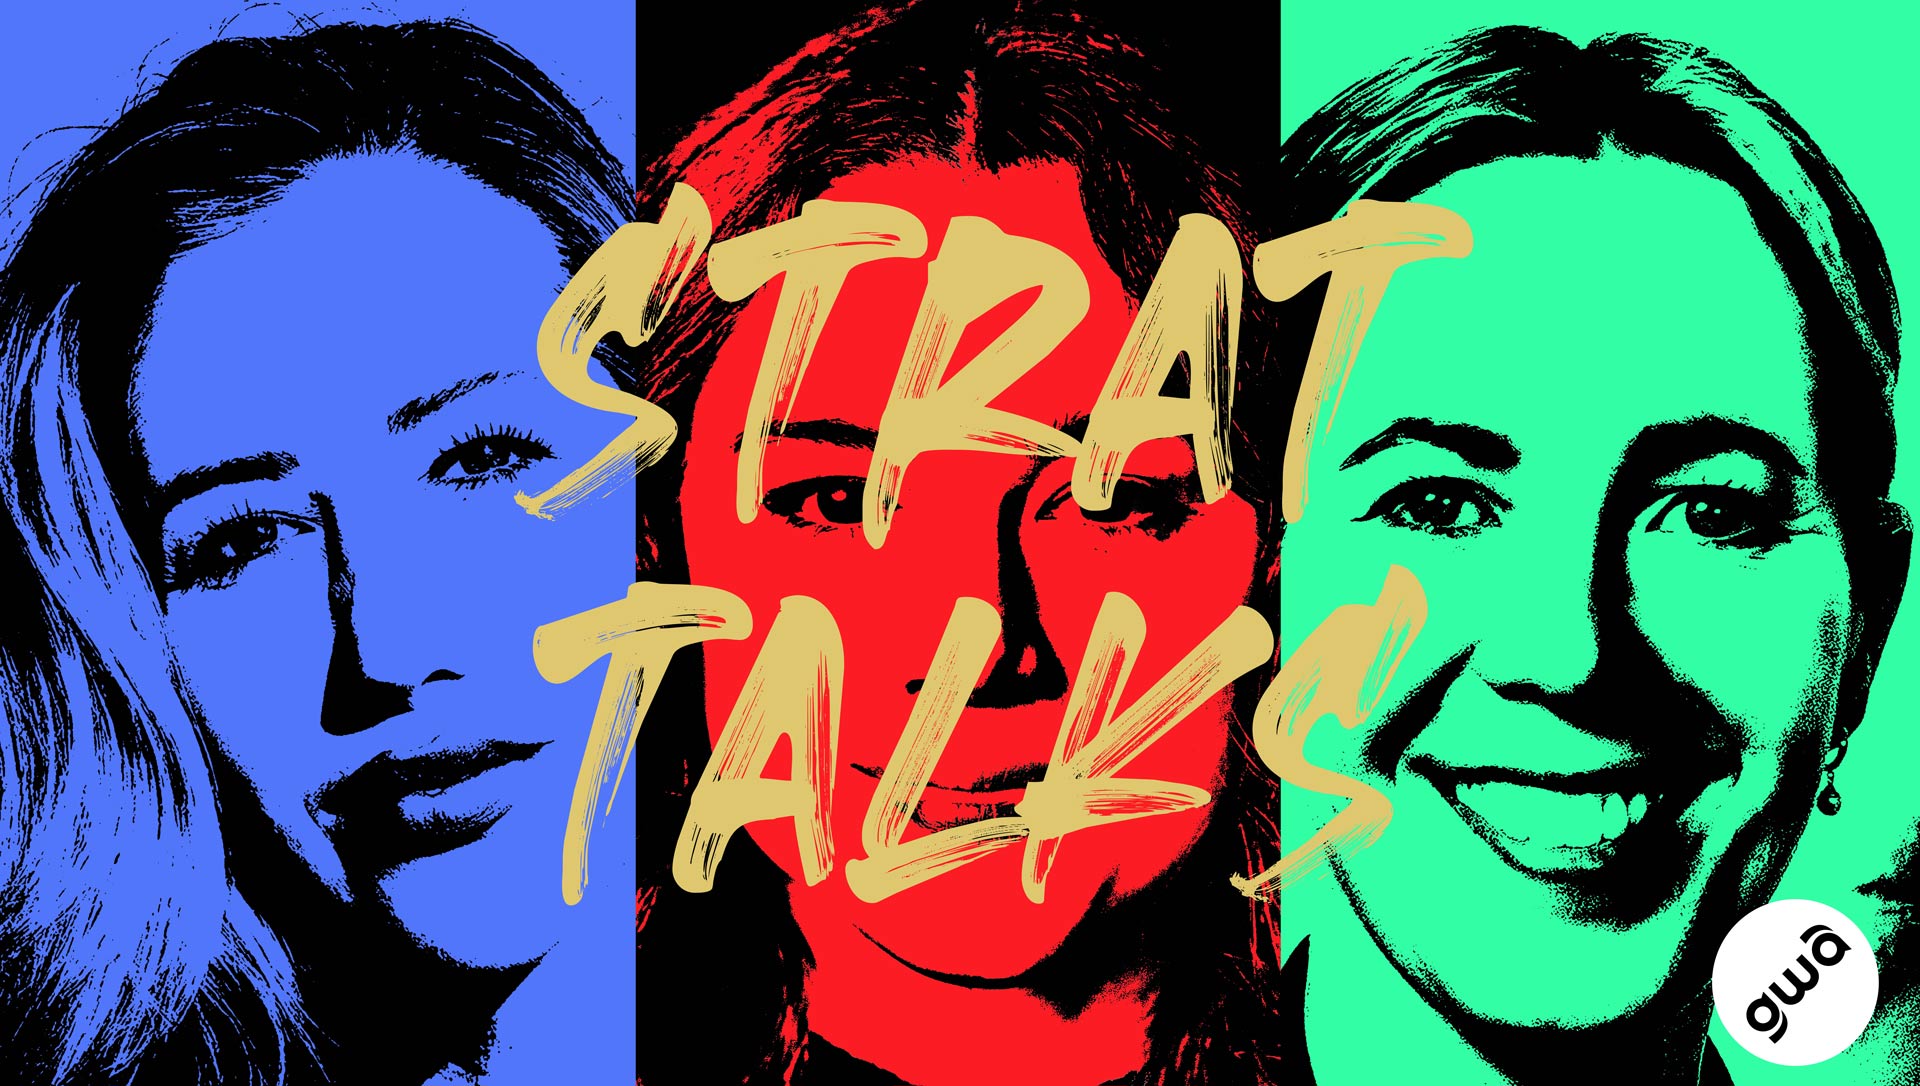 Die Moderatorinnen der Strat Talks in kräftigem blau, rot und grün. Darüber ein handgezeichneter Schriftzug mit dem Namen des Podcasts